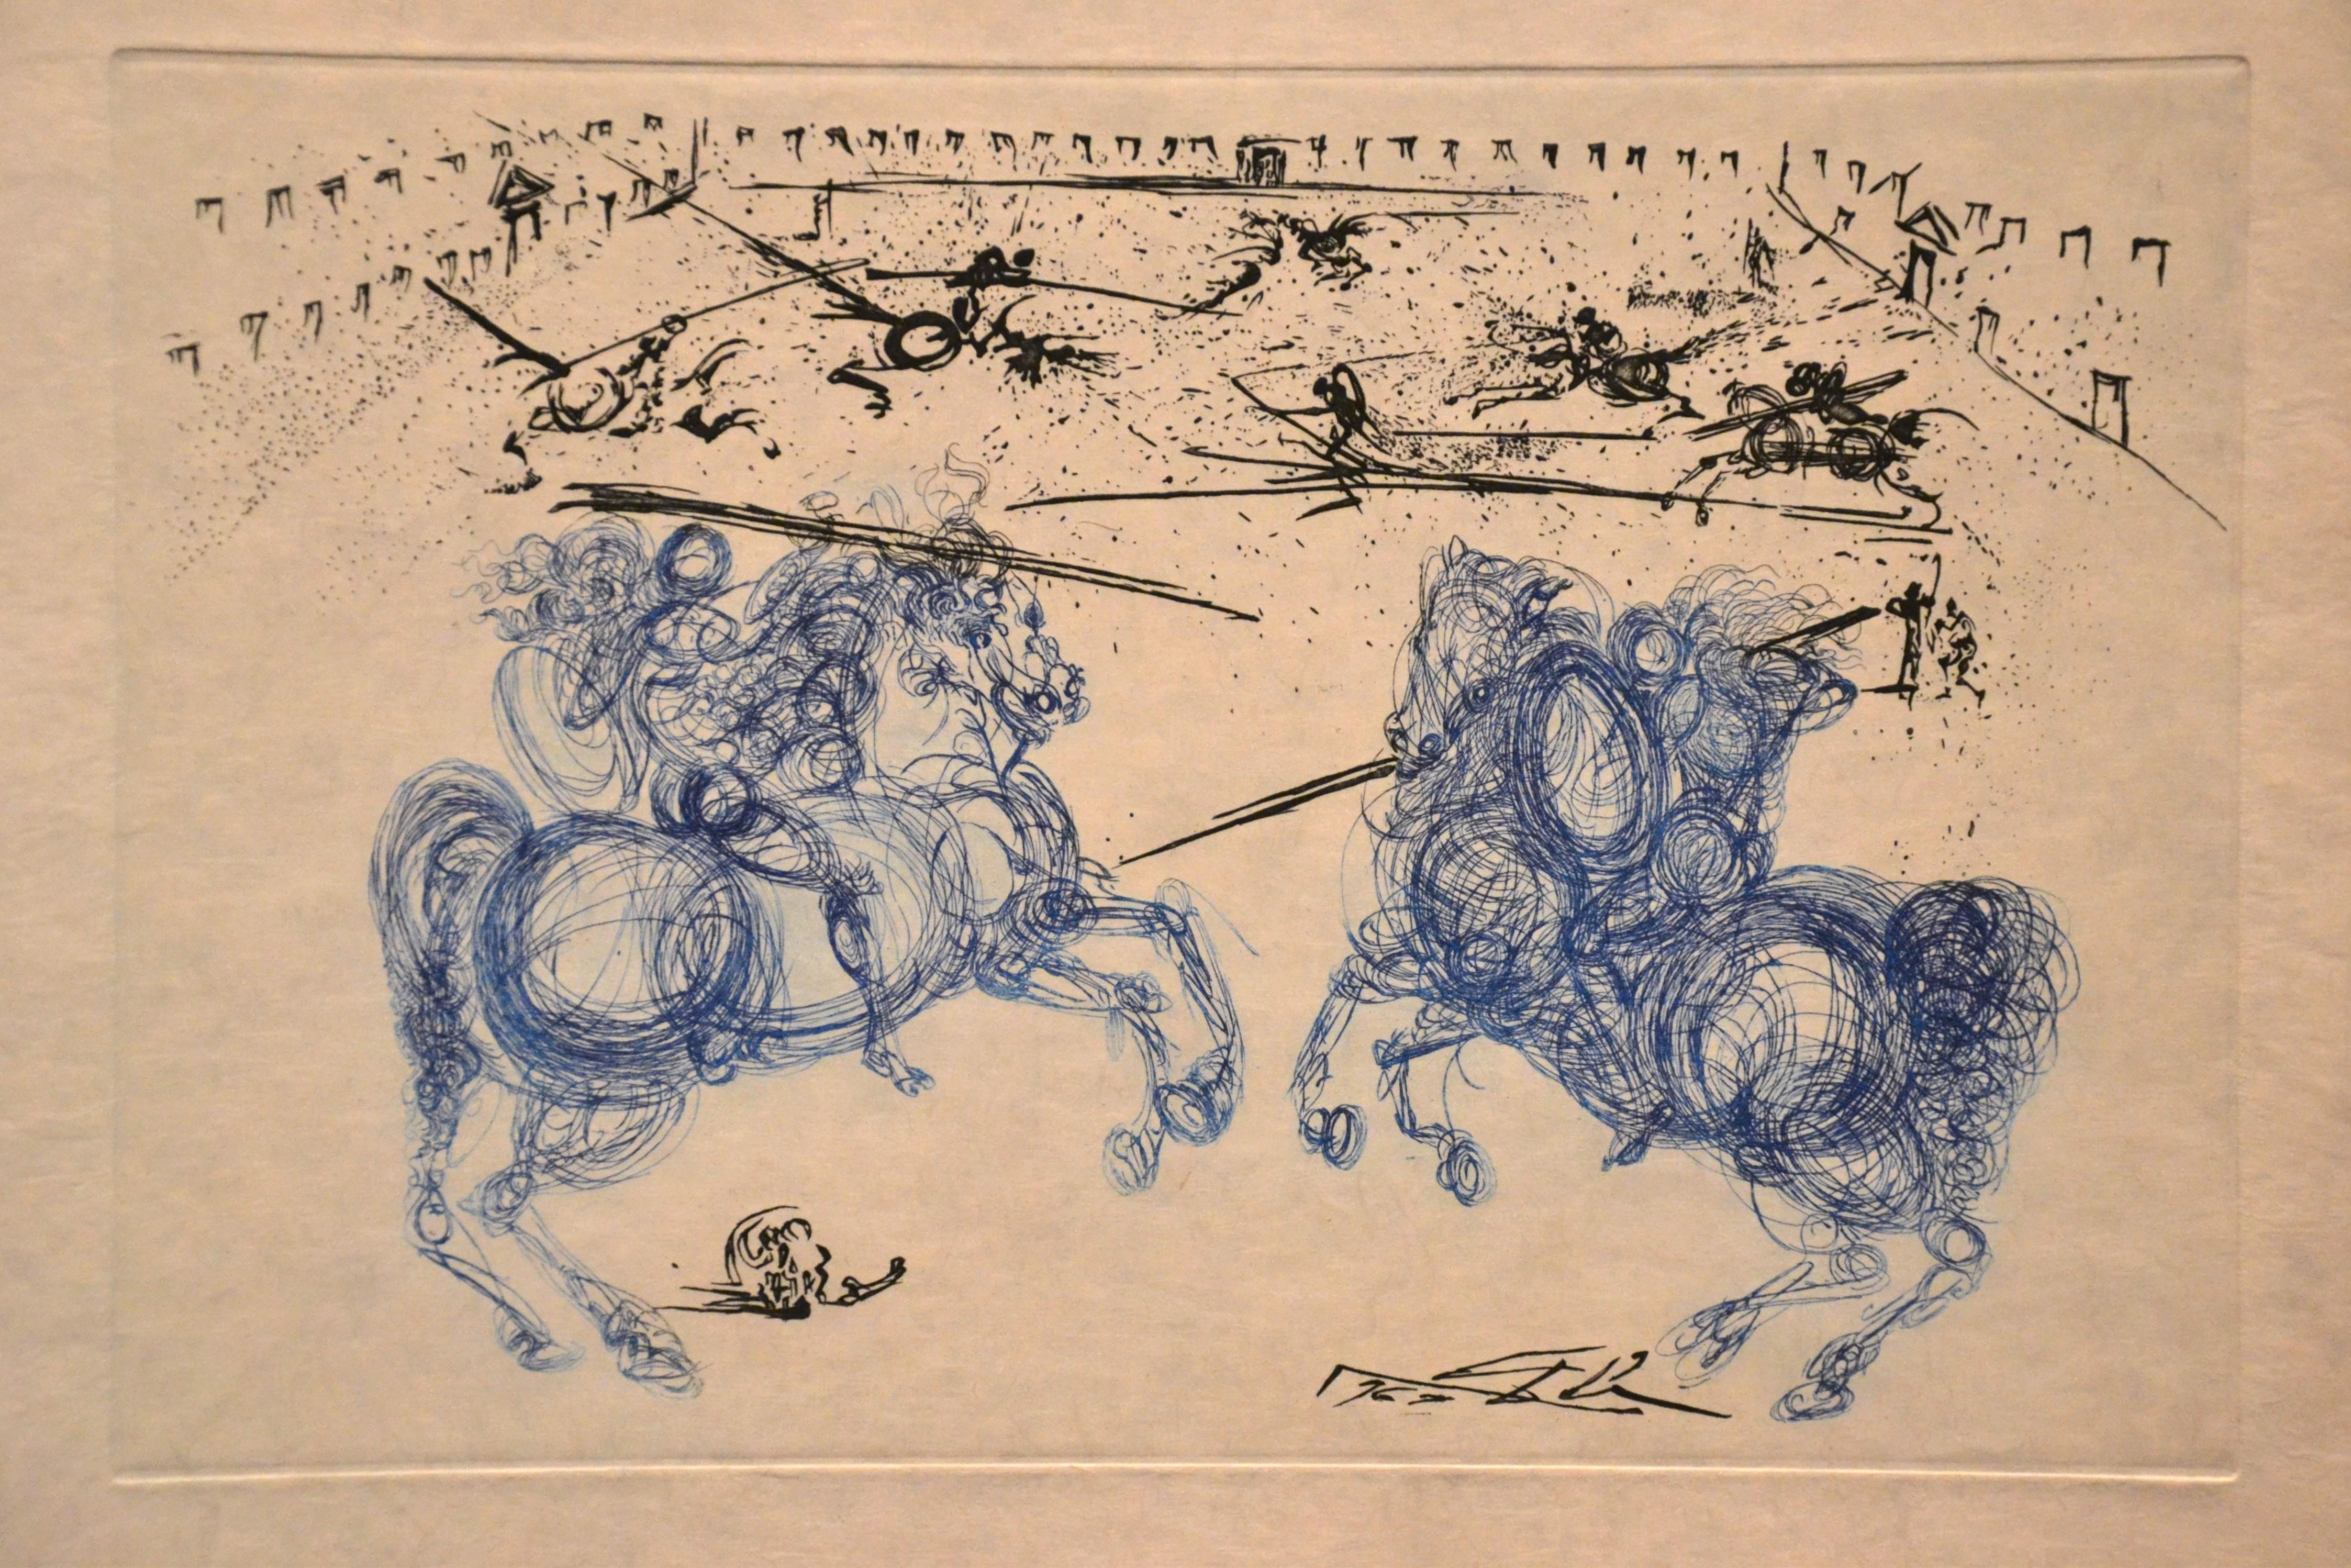 Les Cavaliers Bleus ist eine originale Farbradierung auf Japanpapier:: die 1969 von dem katalanischen Surrealisten Salvador Dalí realisiert wurde. 

Am unteren rechten Rand auf der Platte signiert. Bildabmessungen: 22 x 33 cm. 

Perfekter Zustand.